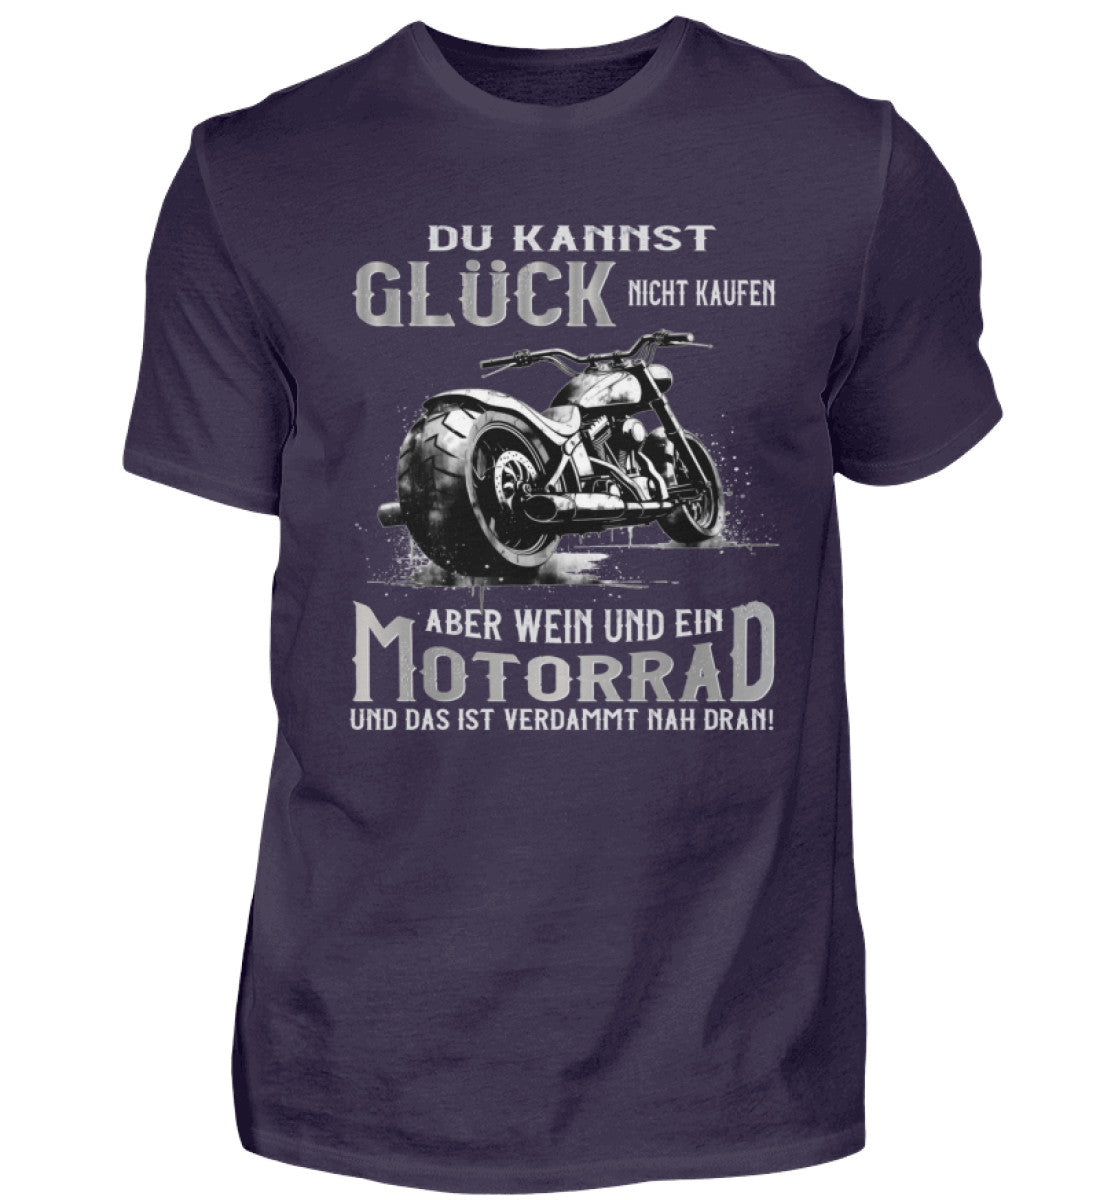 Ein Biker T-Shirt für Motorradfahrer von Wingbikers mit dem Aufdruck, Du kannst Glück nicht kaufen, aber Wein und ein Motorrad und das ist verdammt nah dran! - in auberginen lila.